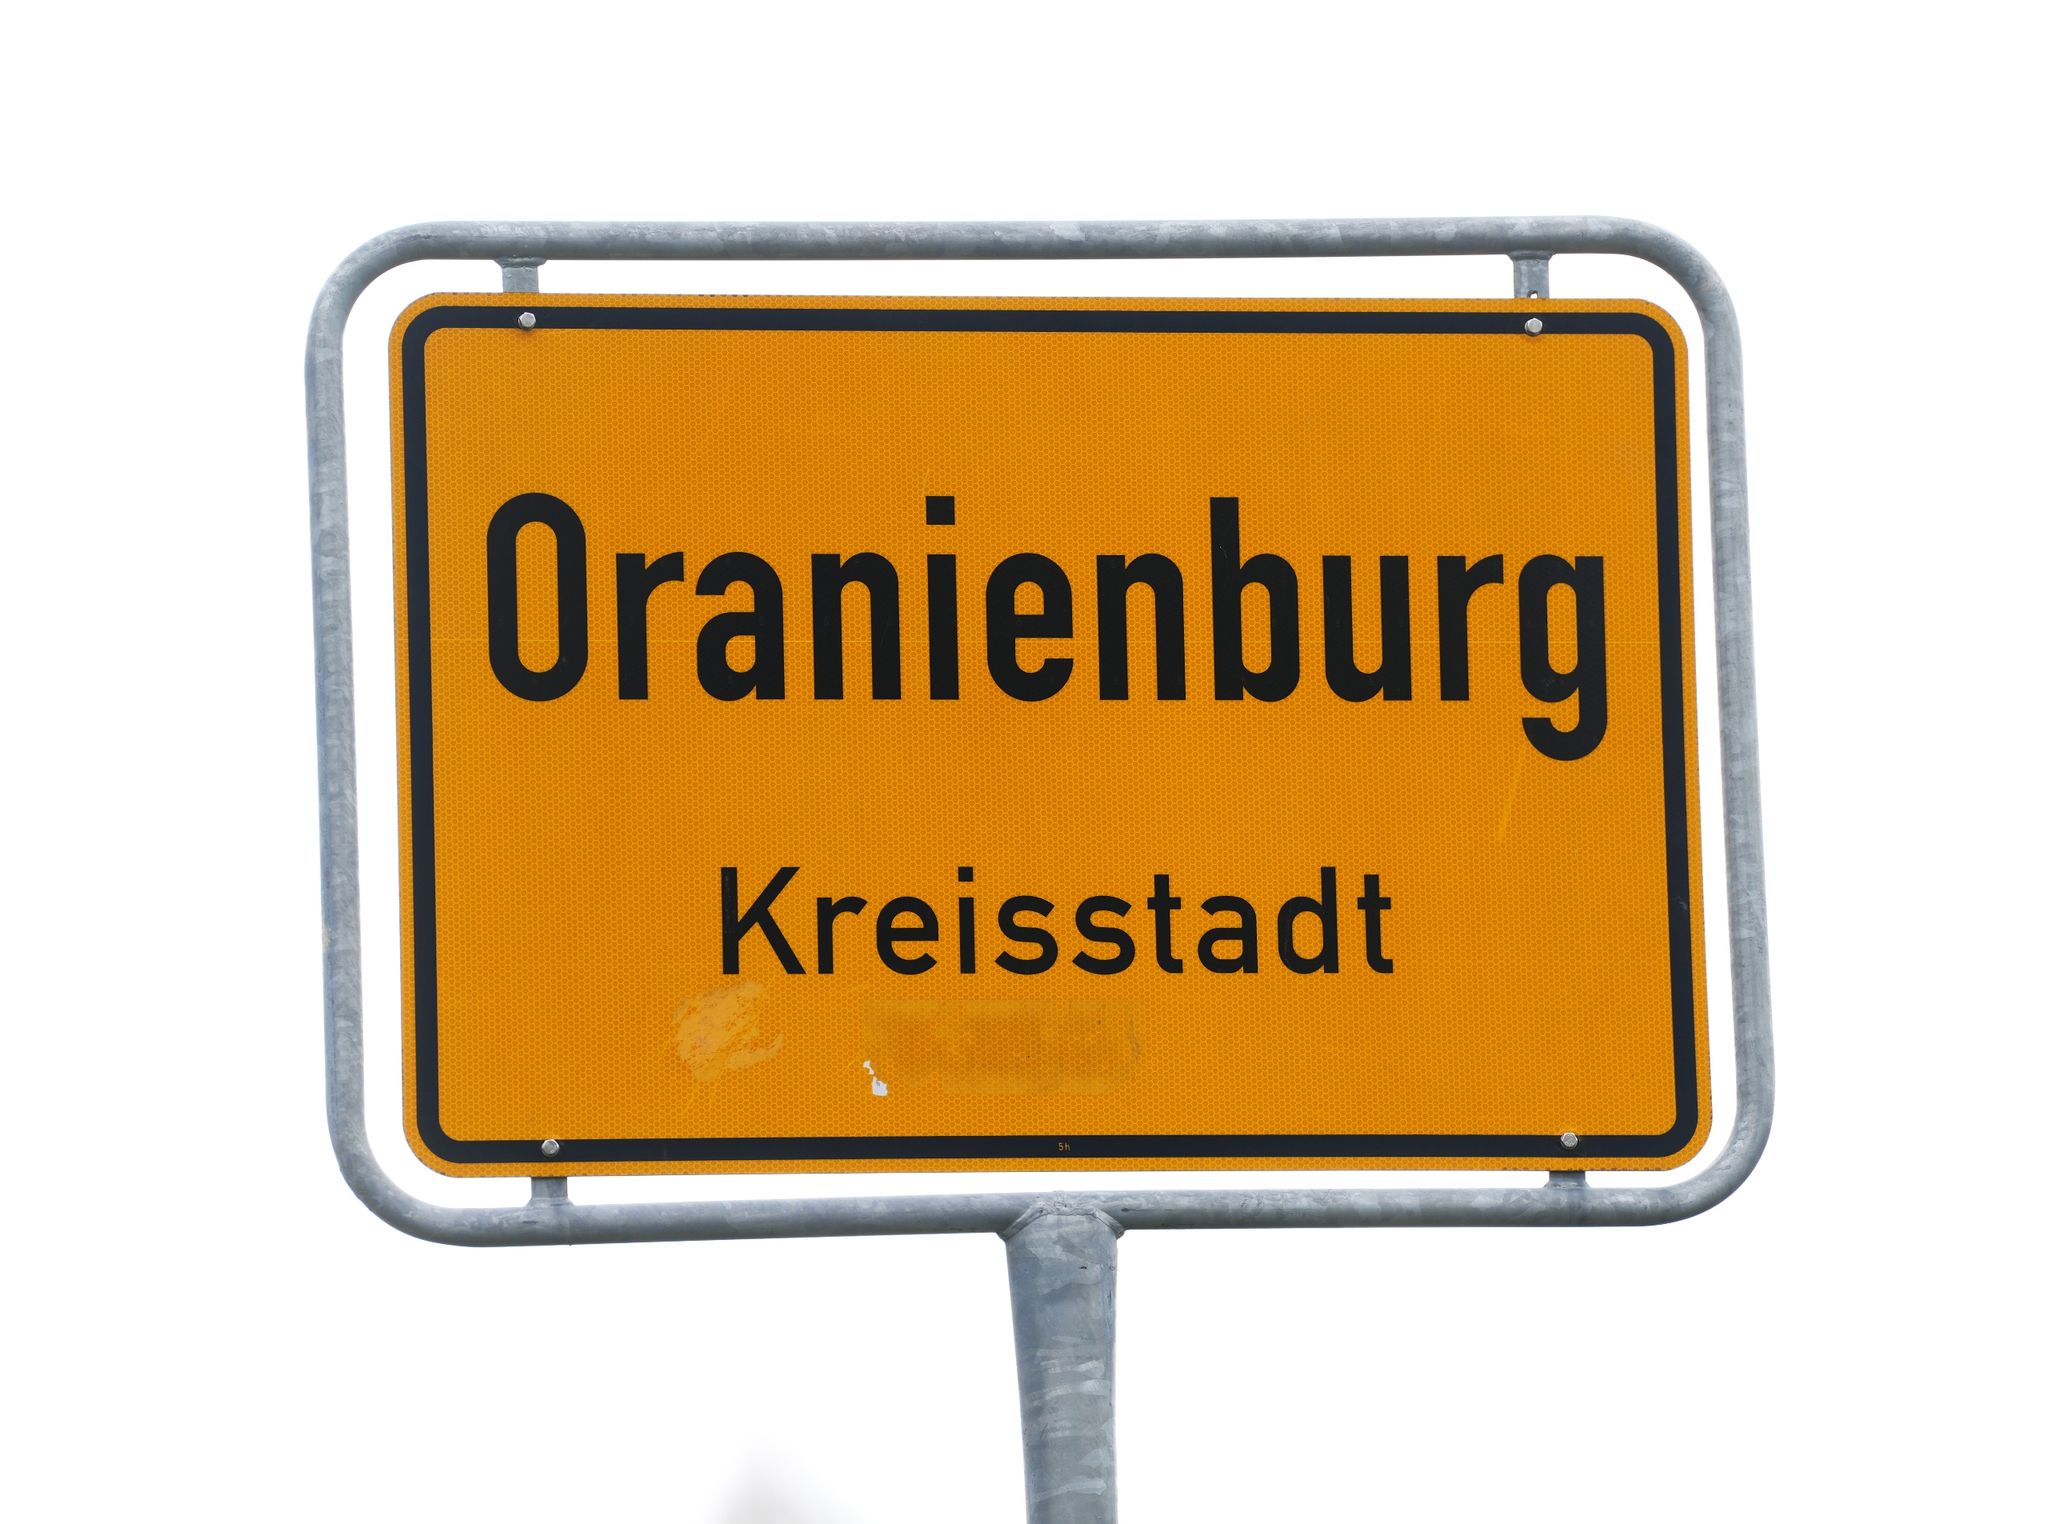 stromnetz-engpass in oranienburg - stadt sucht auswege